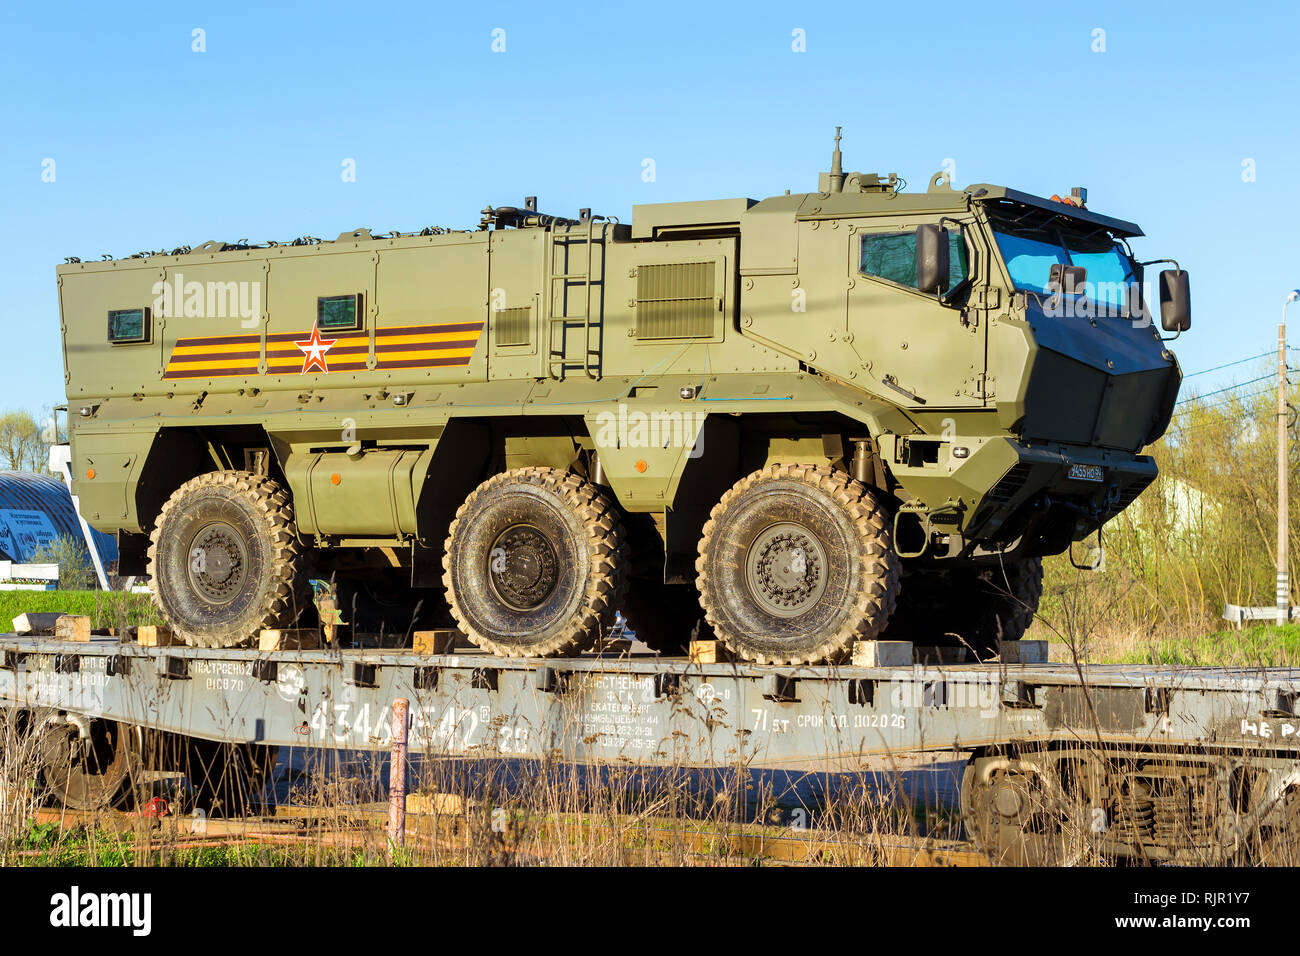 Saint-pétersbourg, Russie - mai 10, 2018 : voiture blindée militaire russe moderne Typhoon-K, installé sur la plate-forme ferroviaire de transport pour le transport au lieu d'exercices militaires. L'équipement de l'armée d'armes nucléaires, Banque D'Images